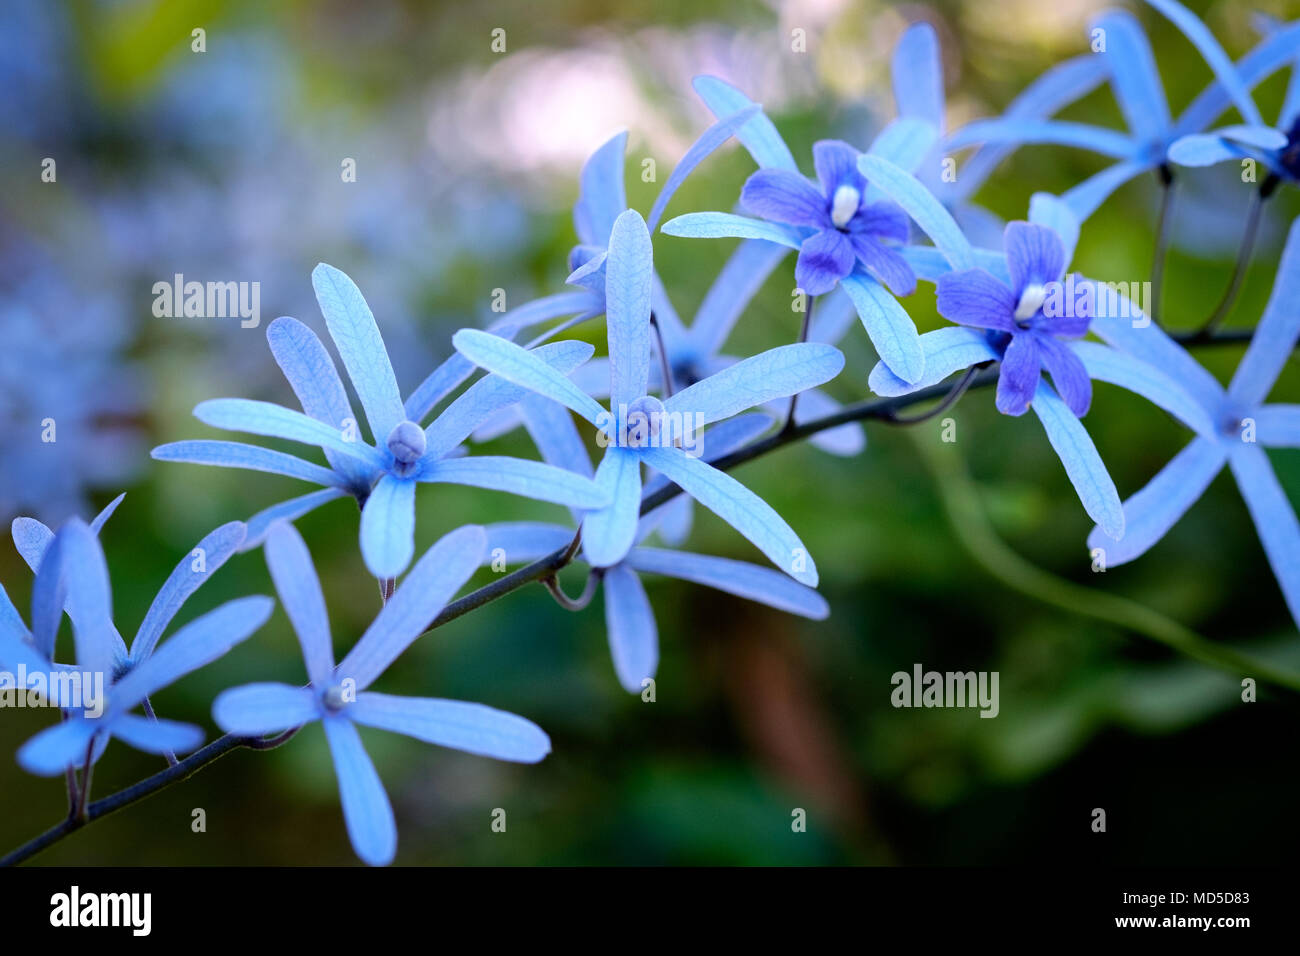 Chiudere il colpo di uno spruzzo di fiori blu con lunghe e strette petali contro una offuscata sub-tropicale giardino sullo sfondo Foto Stock